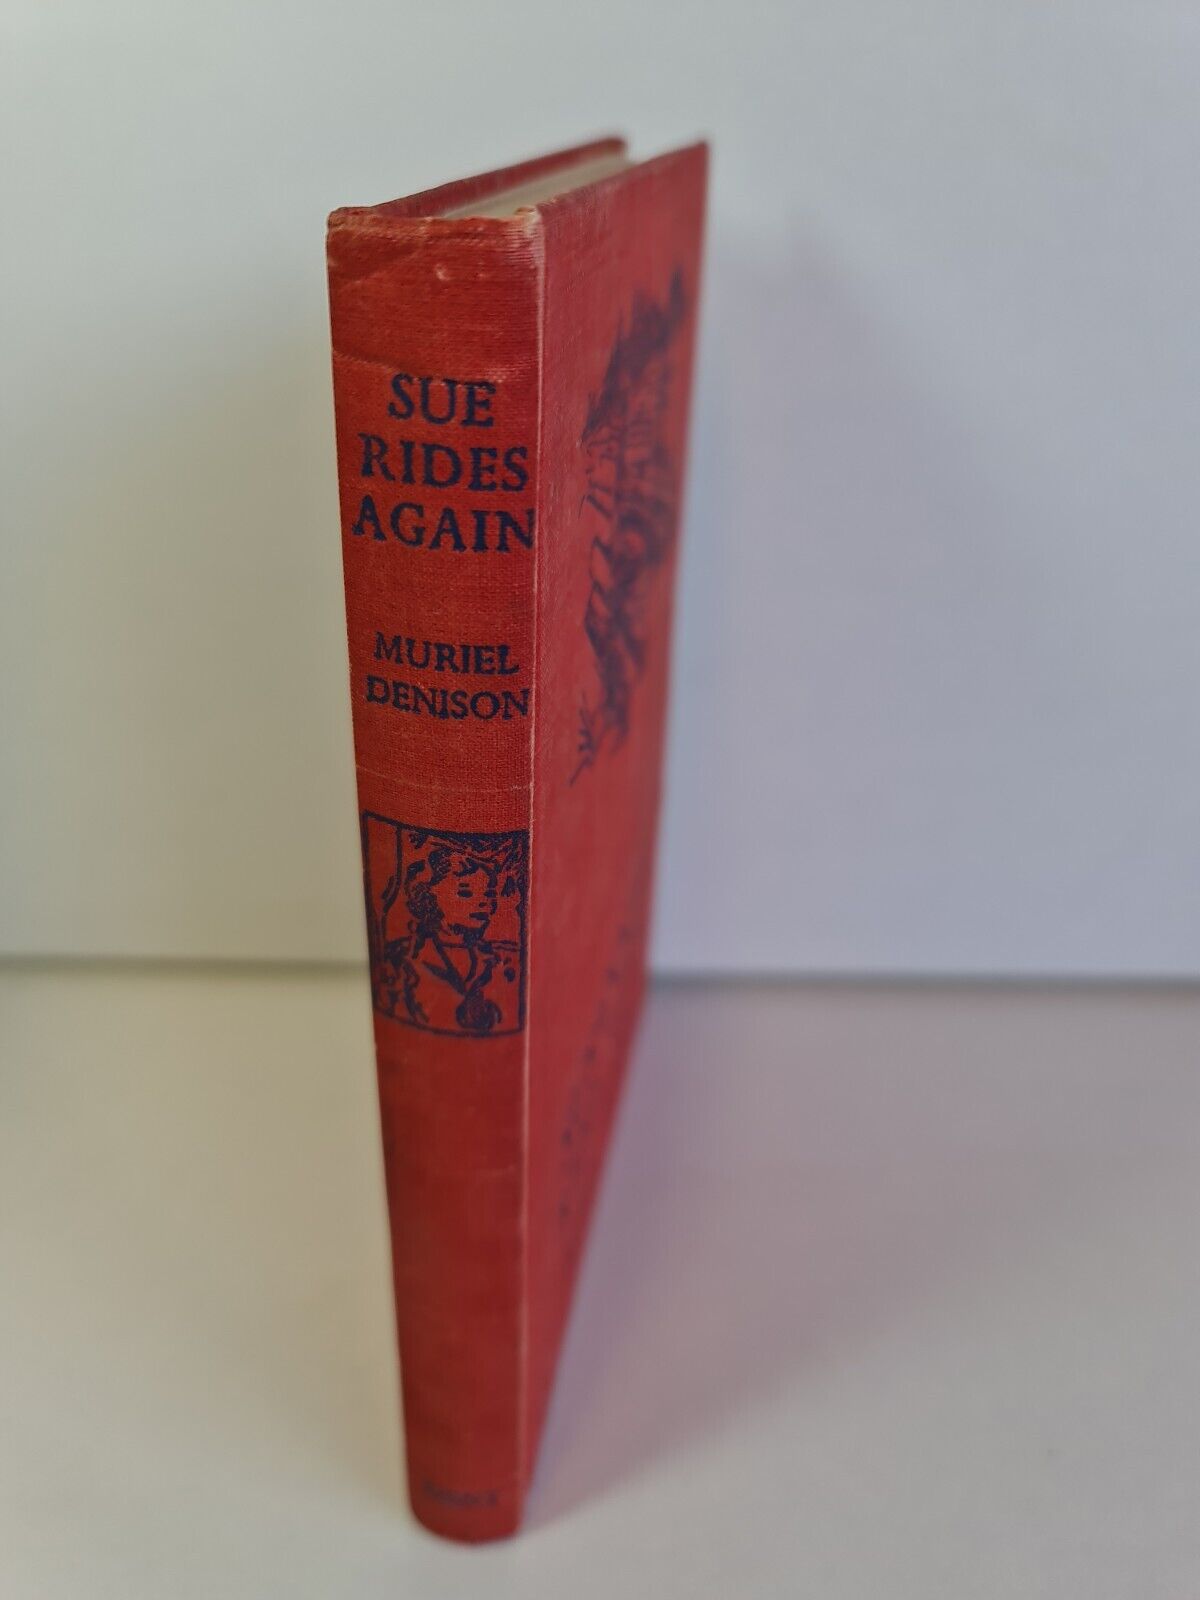 Susannah Rides Again by Muriel Denison (1942)